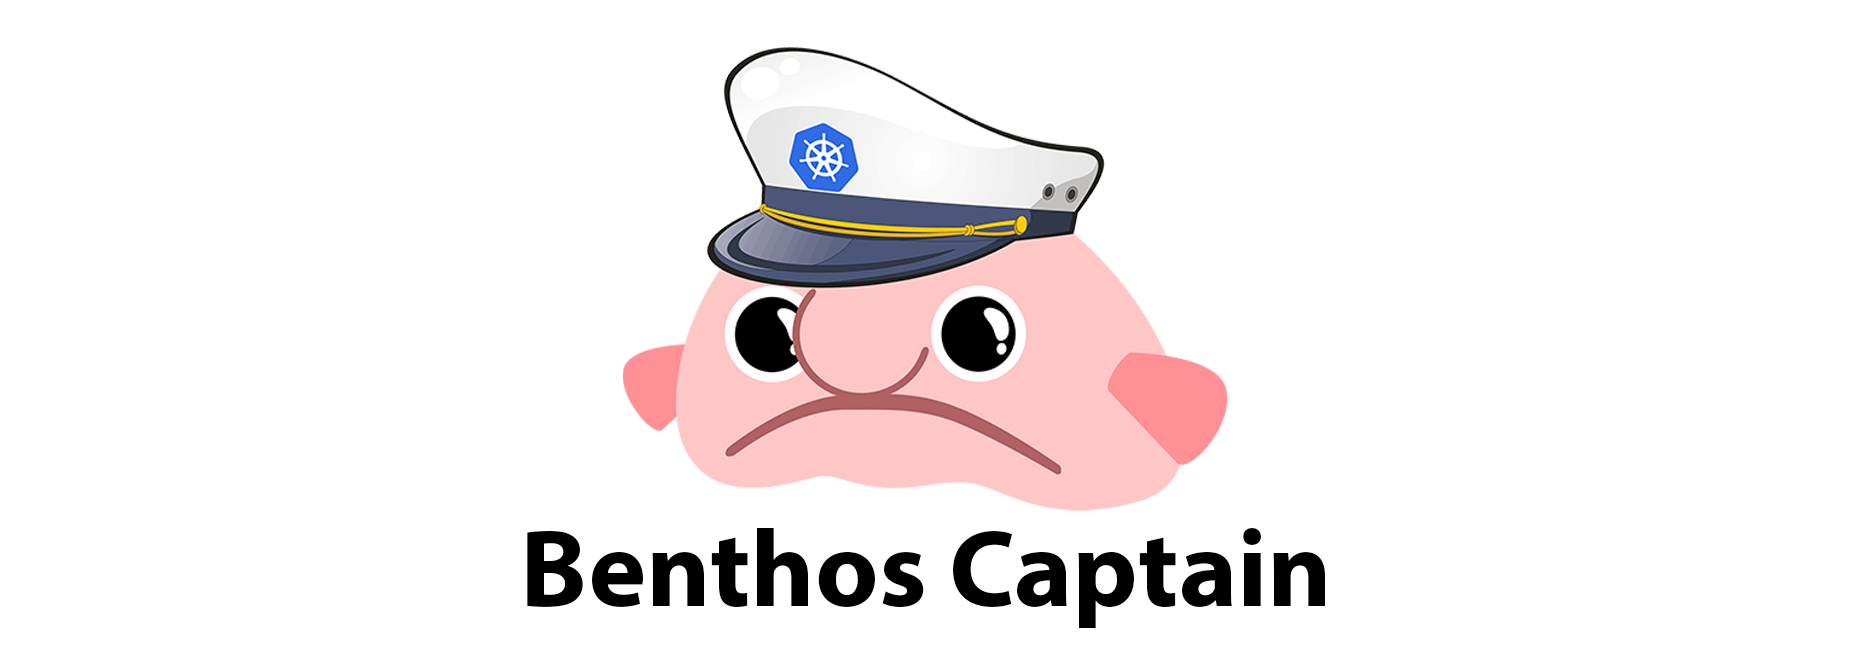 Benthos Captain